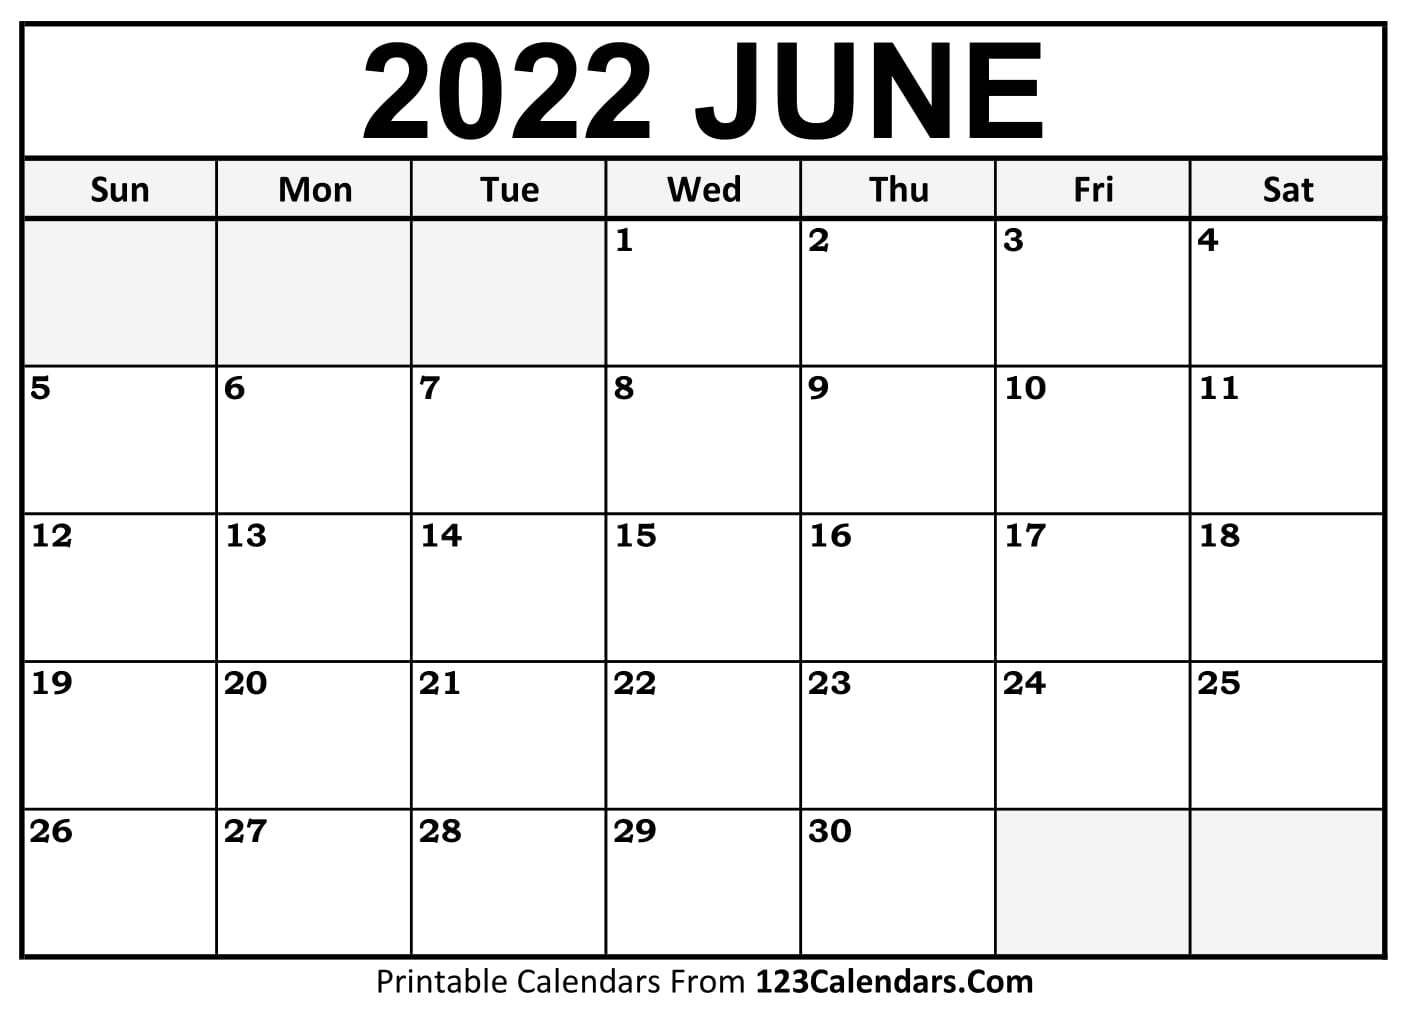 June 2022 Calendar To Print Printable June 2022 Calendar Templates - 123Calendars.com